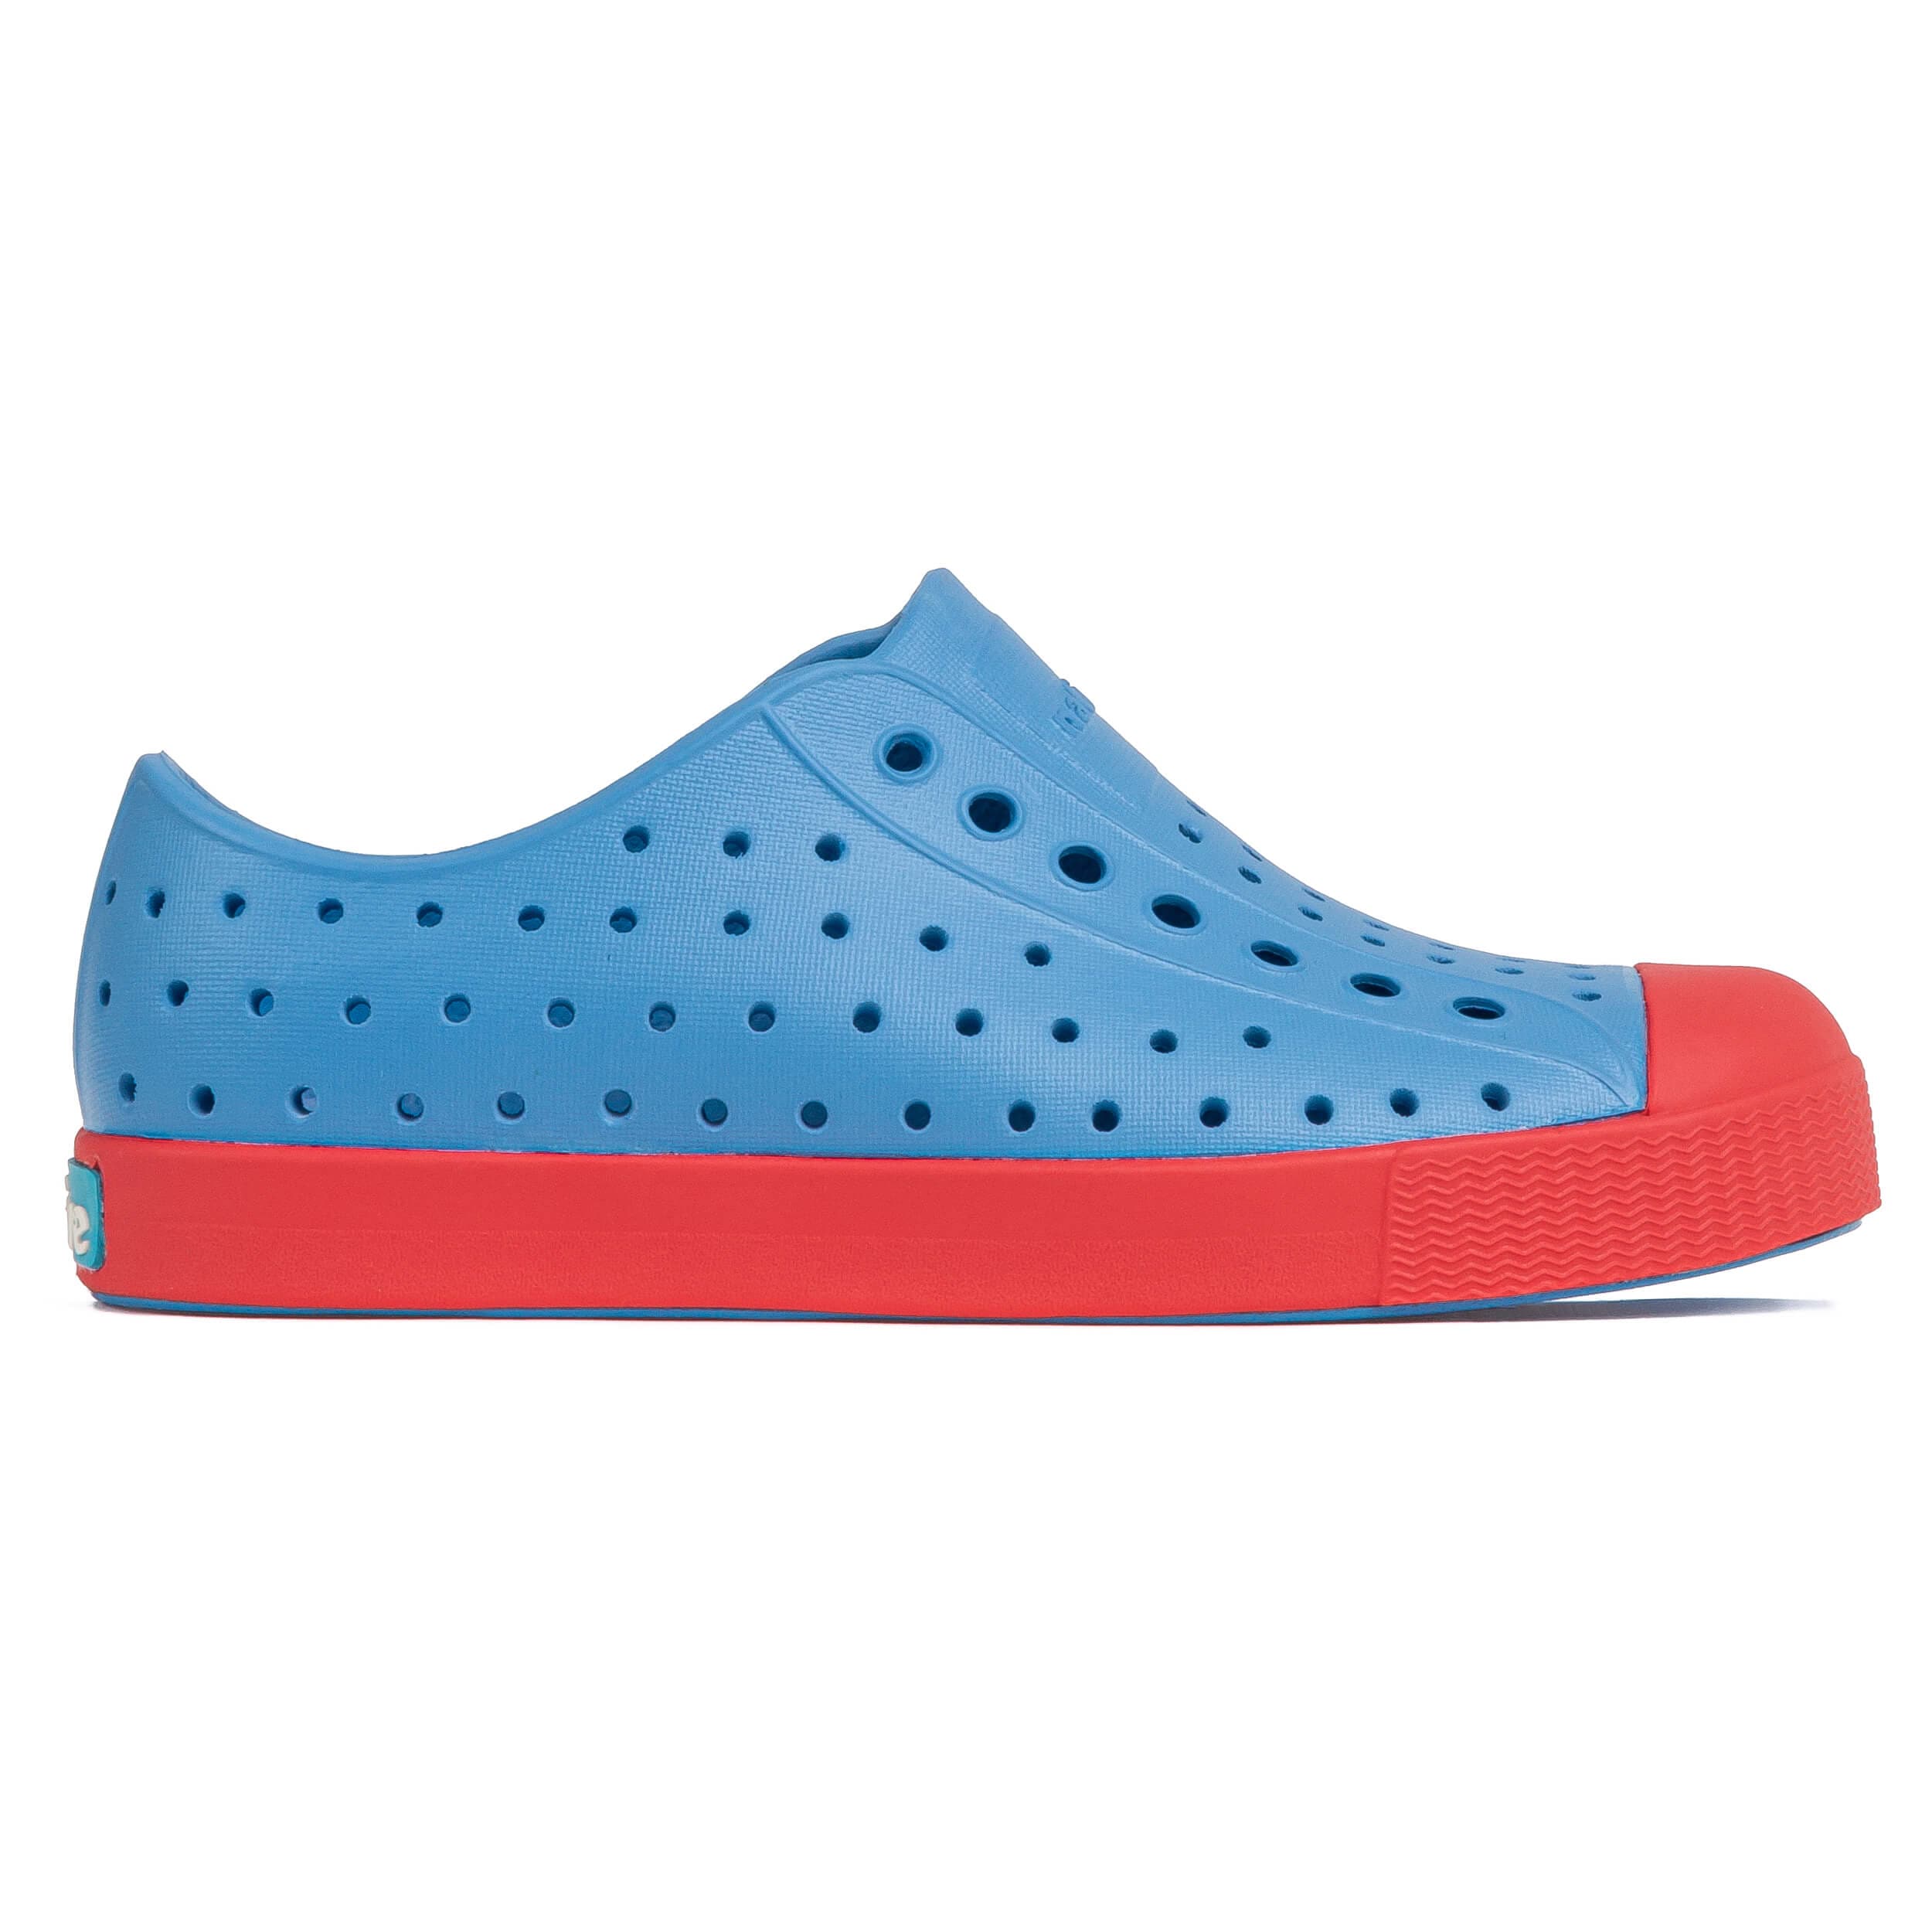 Junior Jefferson Water shoe - Blue